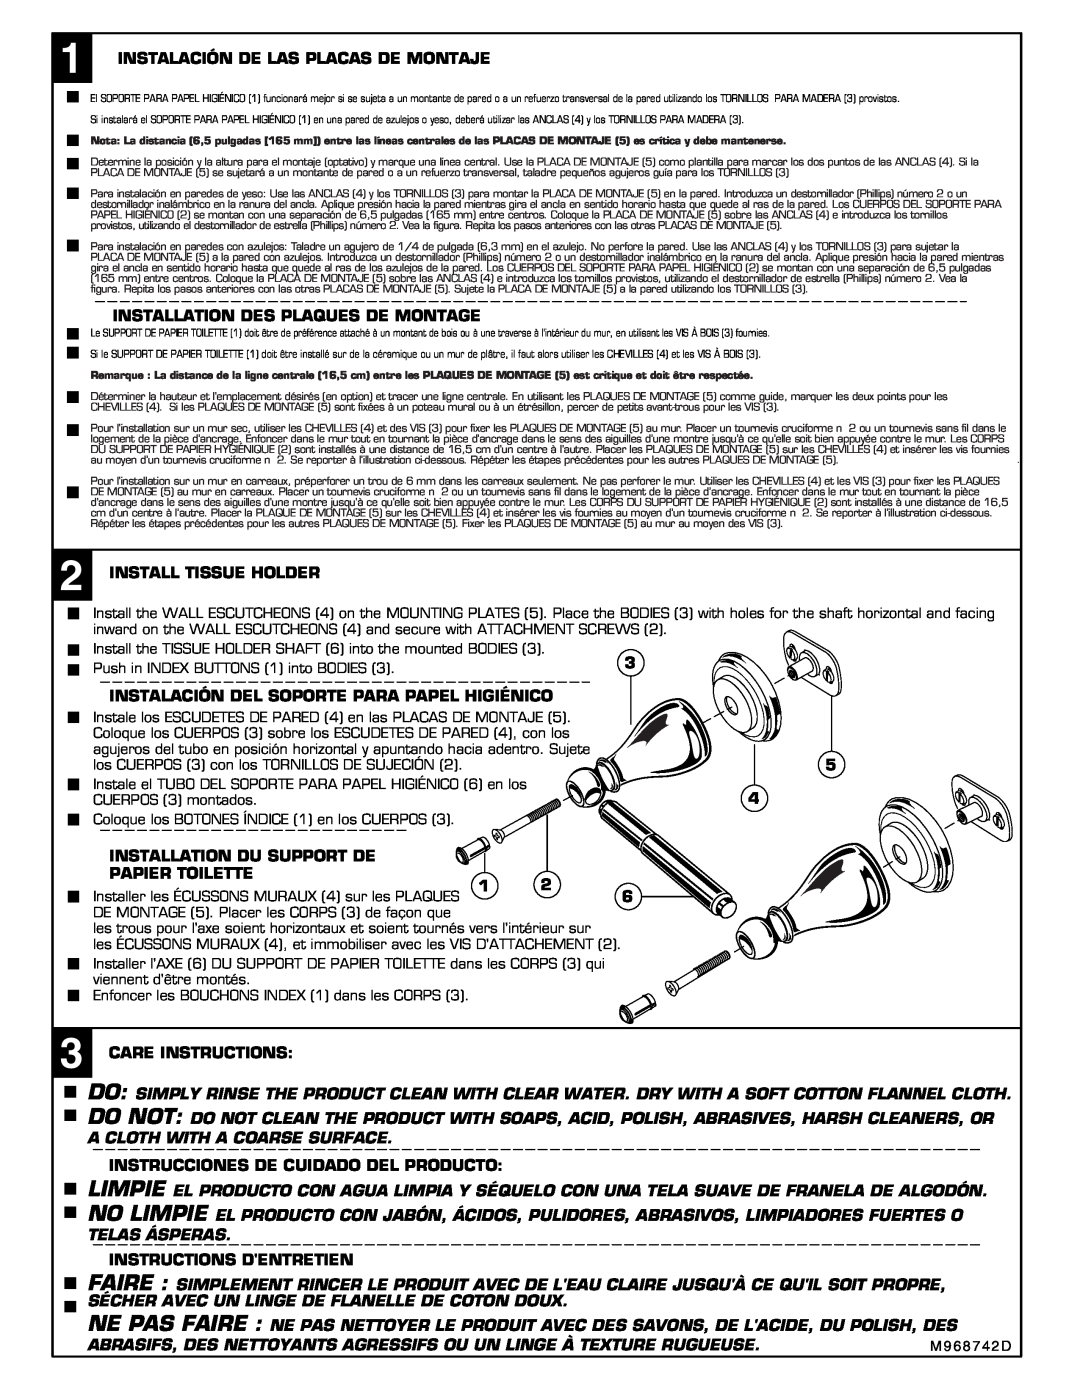 American Standard 8040.230 installation instructions Instalación De Las Placas De Montaje 